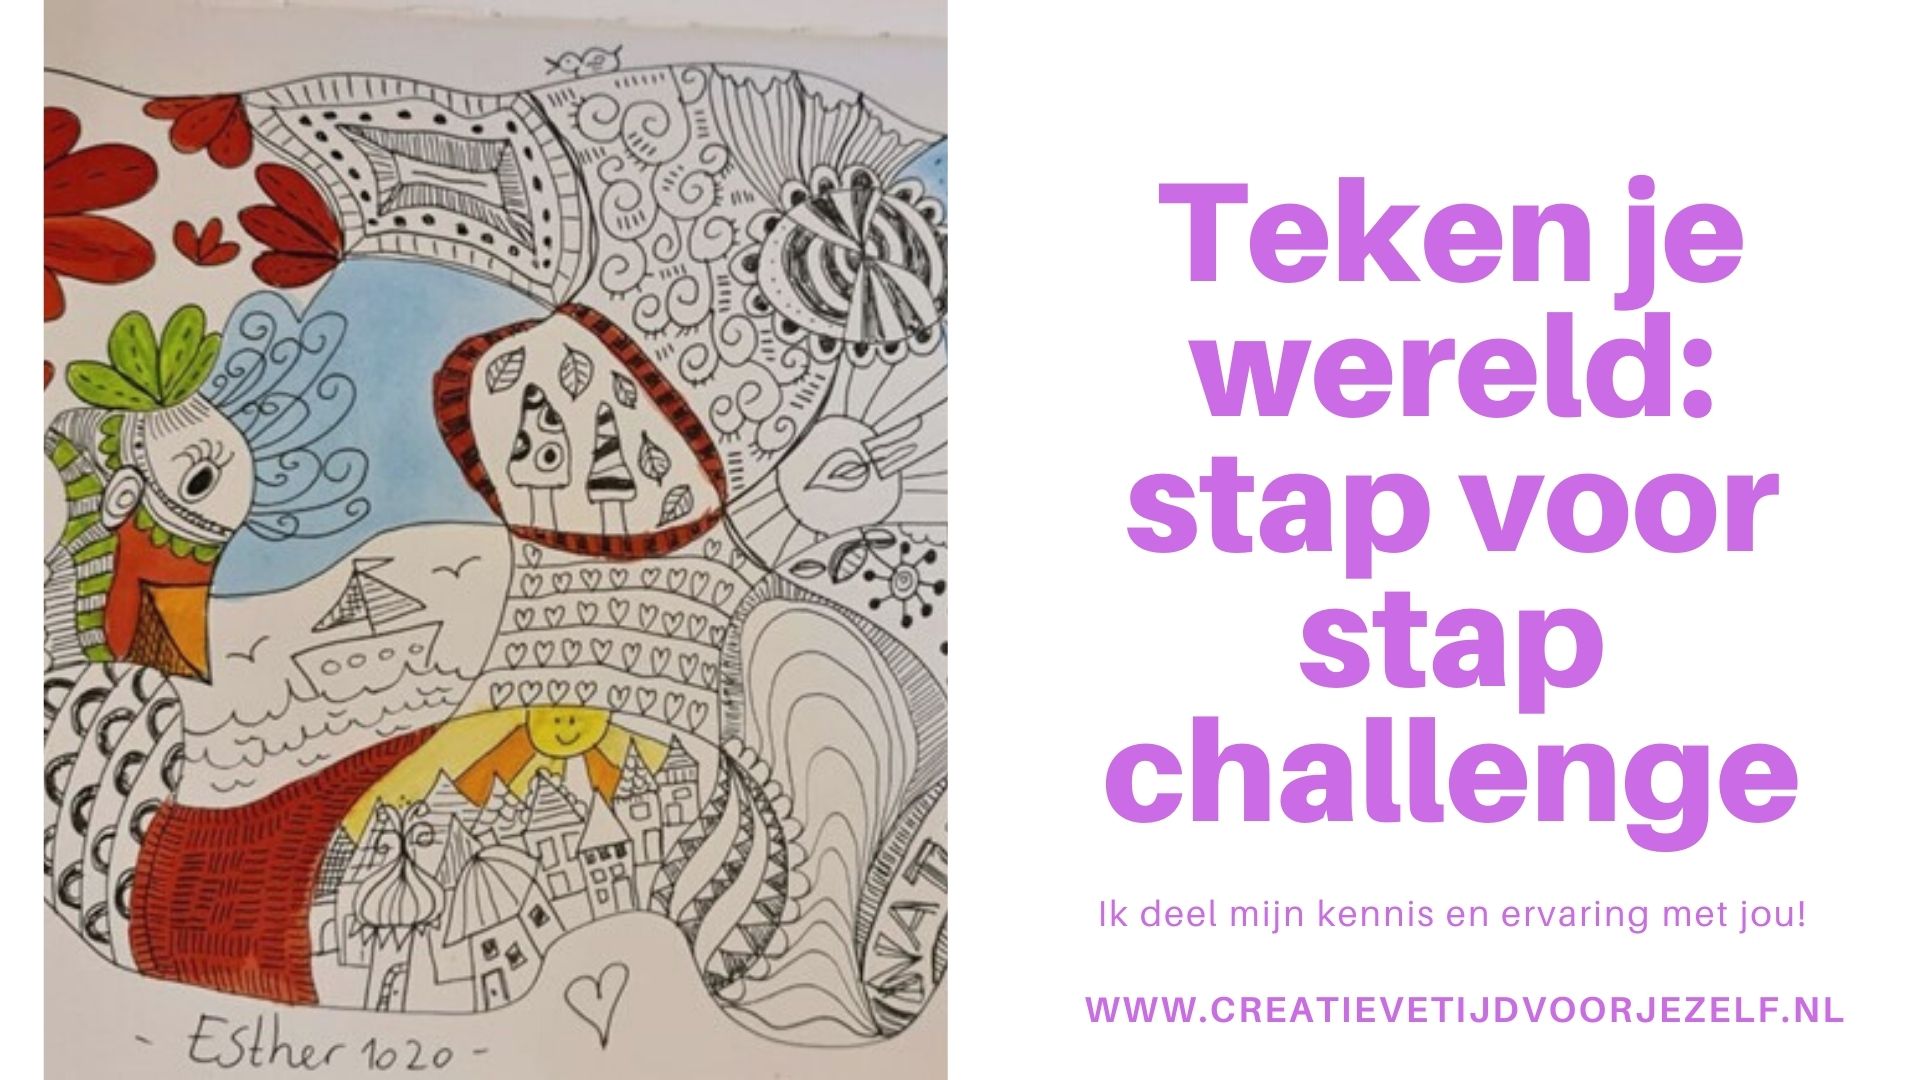 Teken je wereld: stap voor stap challenge